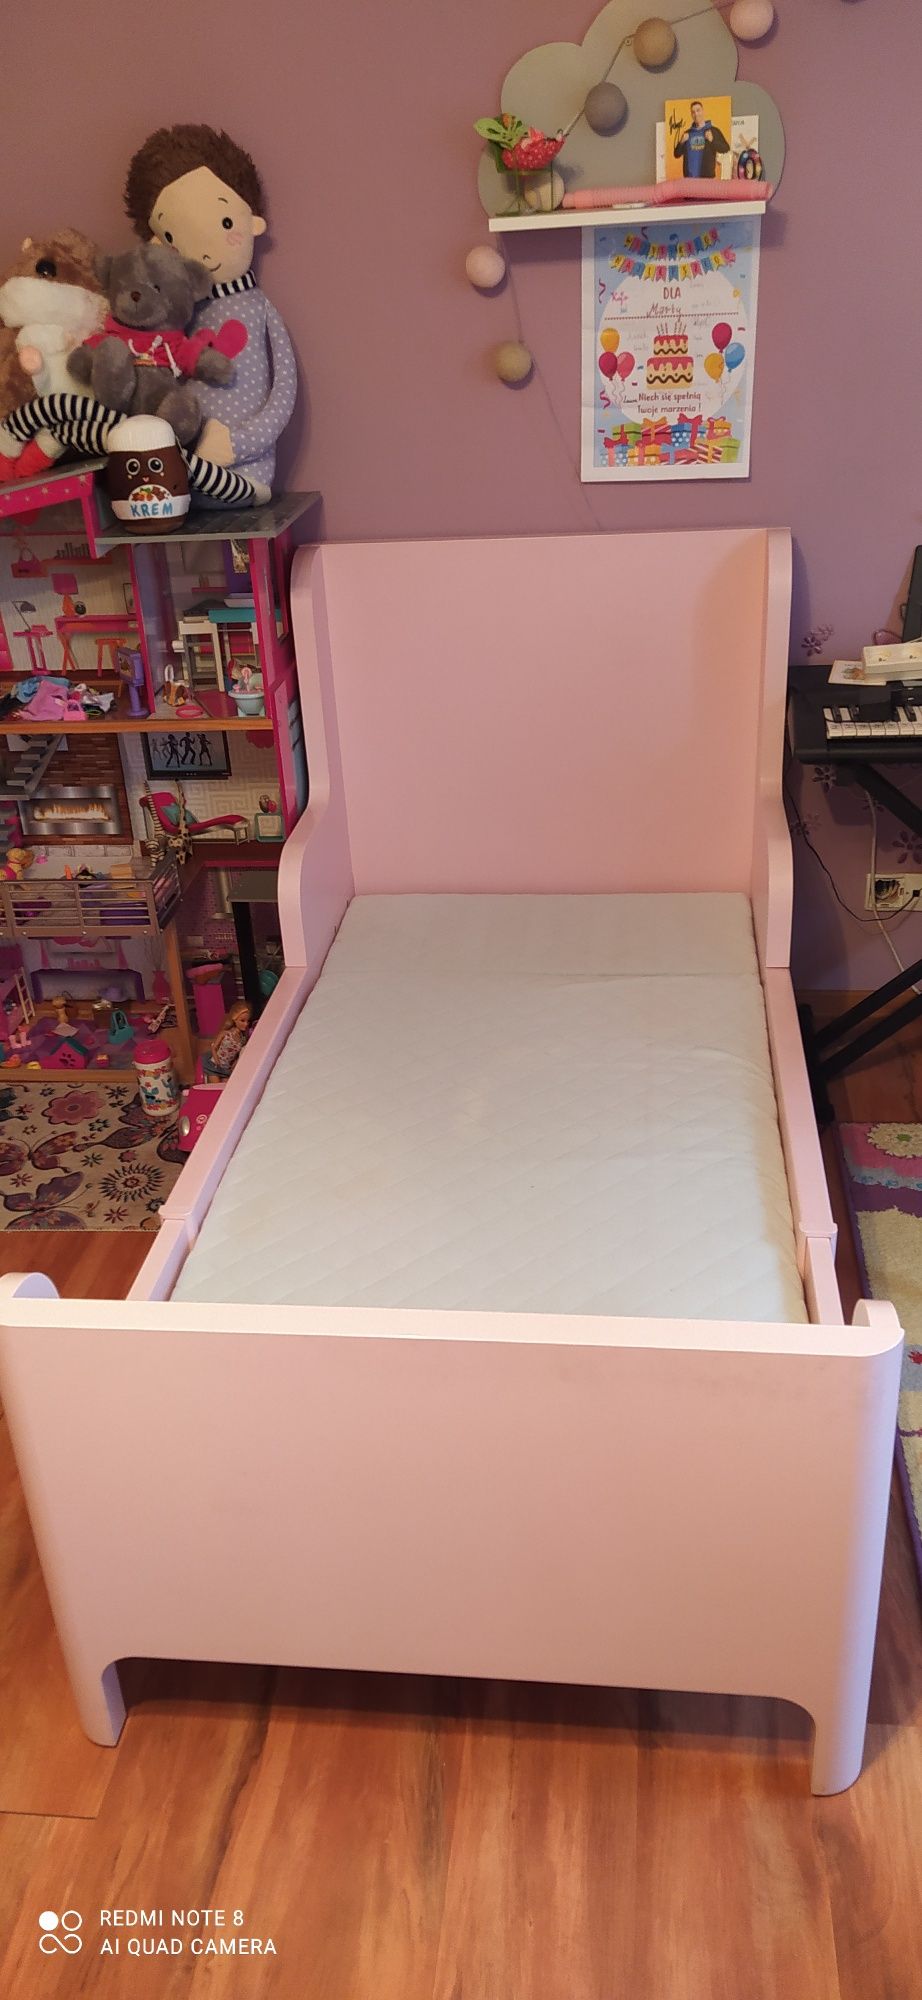 Łóżko dziecięce Ikea rosnące wraz z dzieckiem BUSUNGE